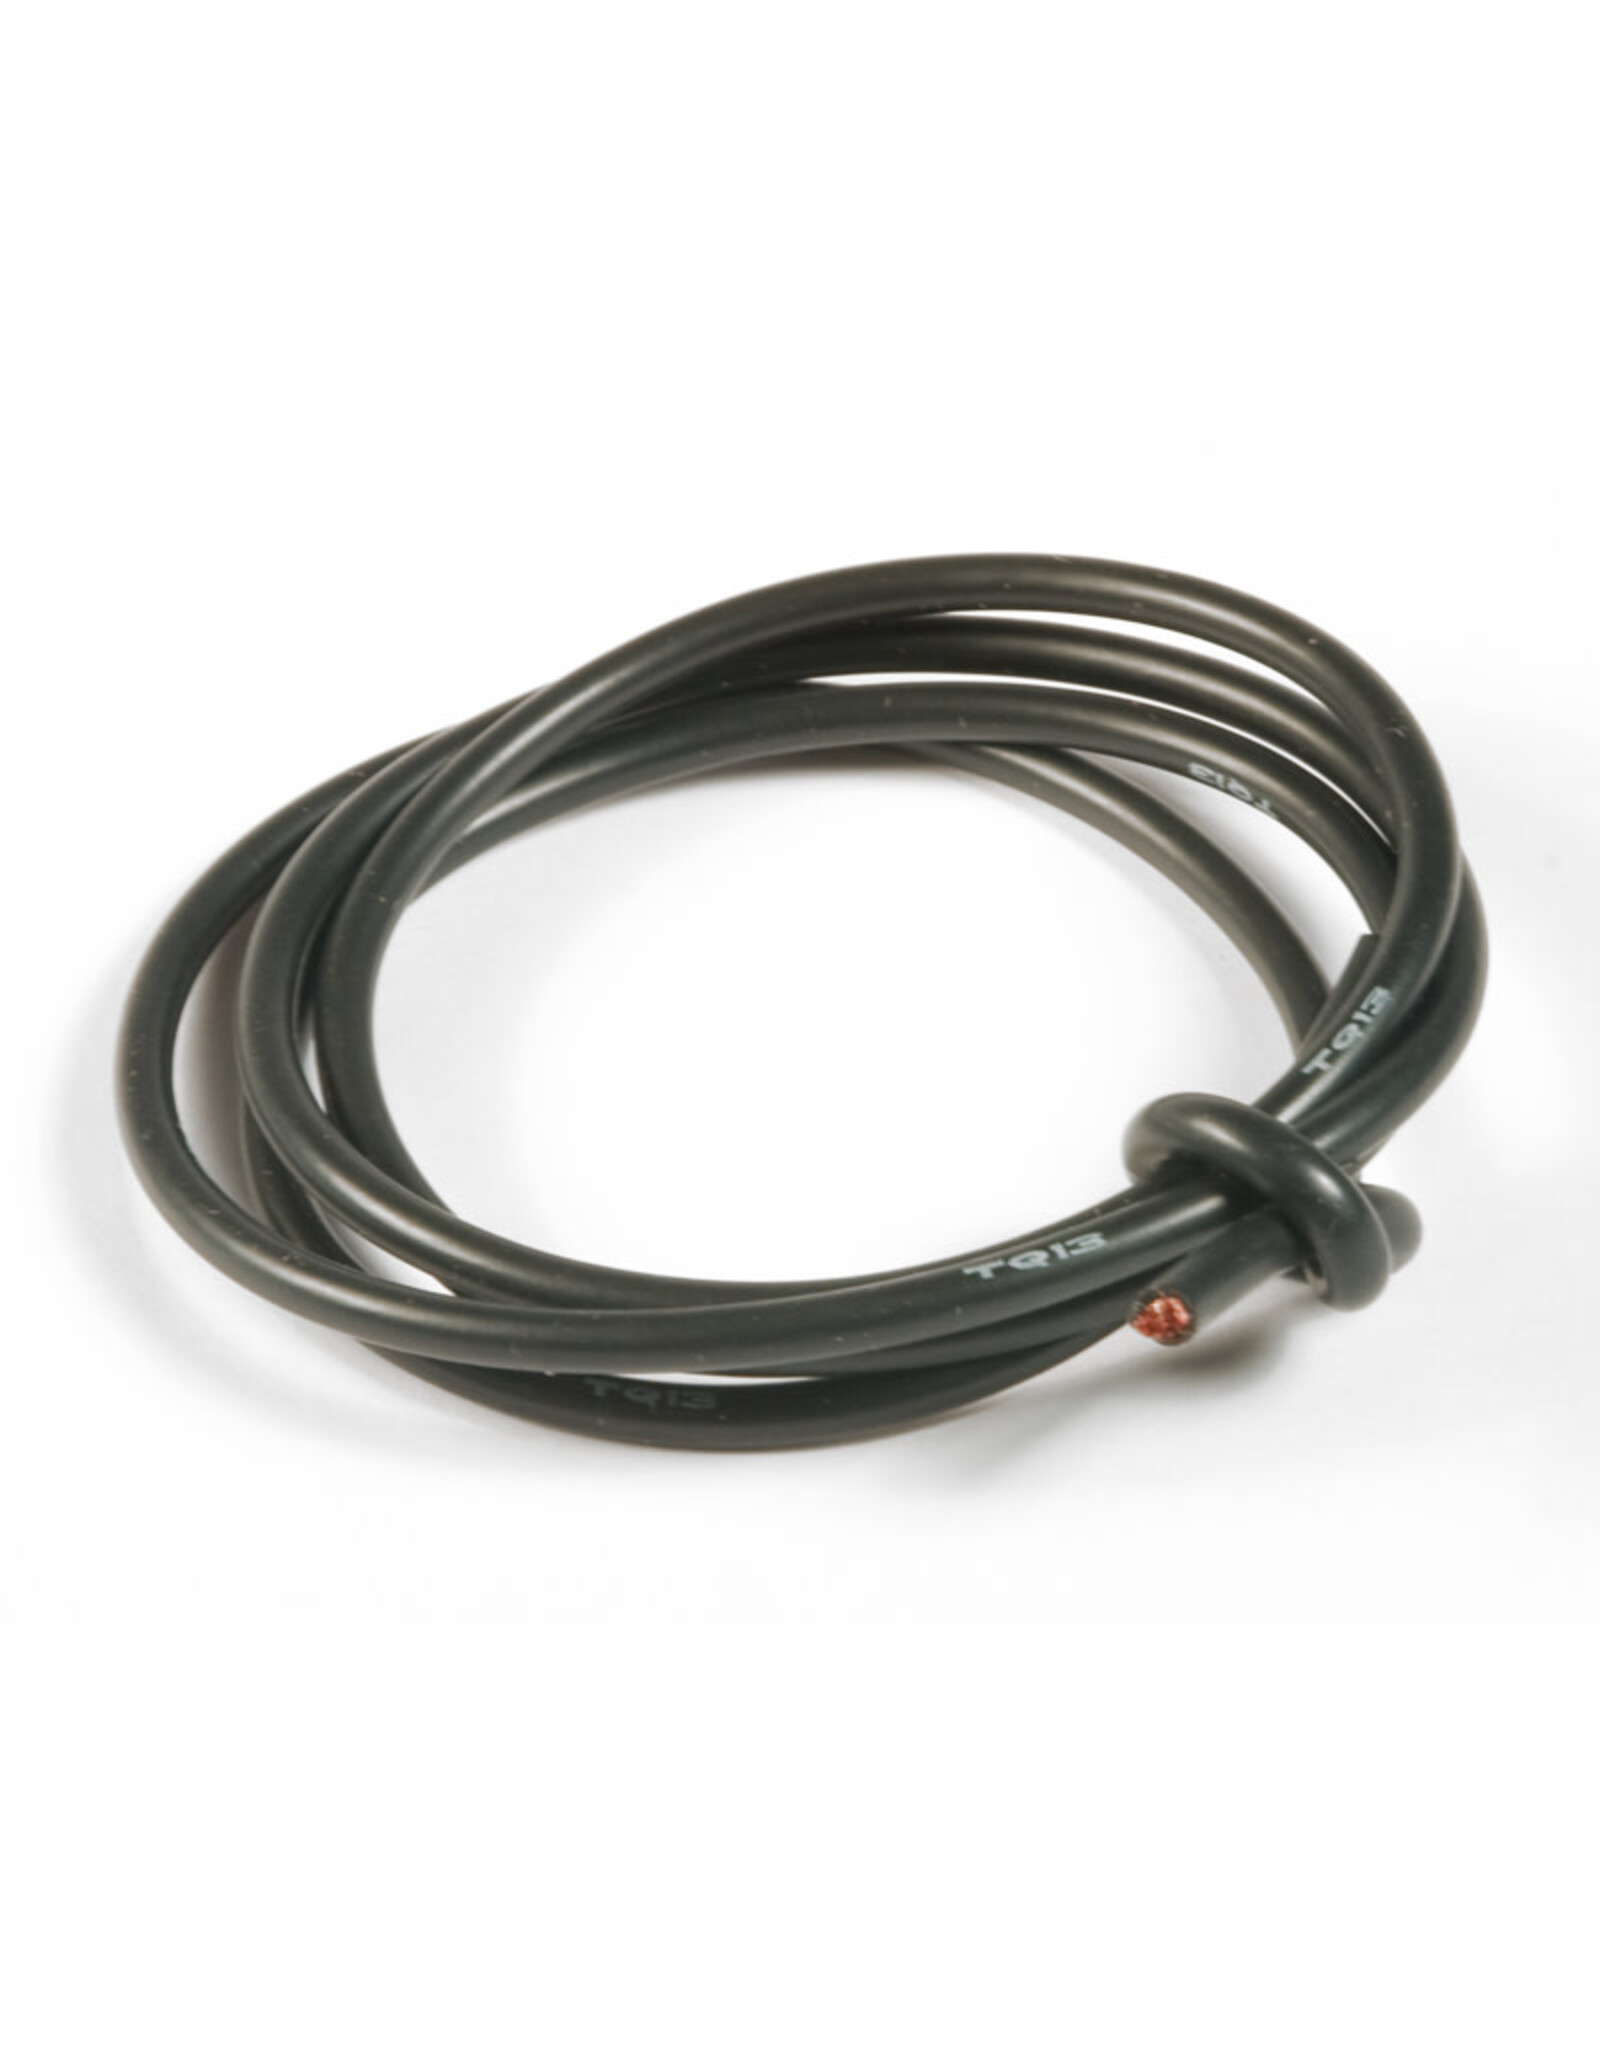 TQ wire 13 Gauge Super Flexible Wire- Black 3'